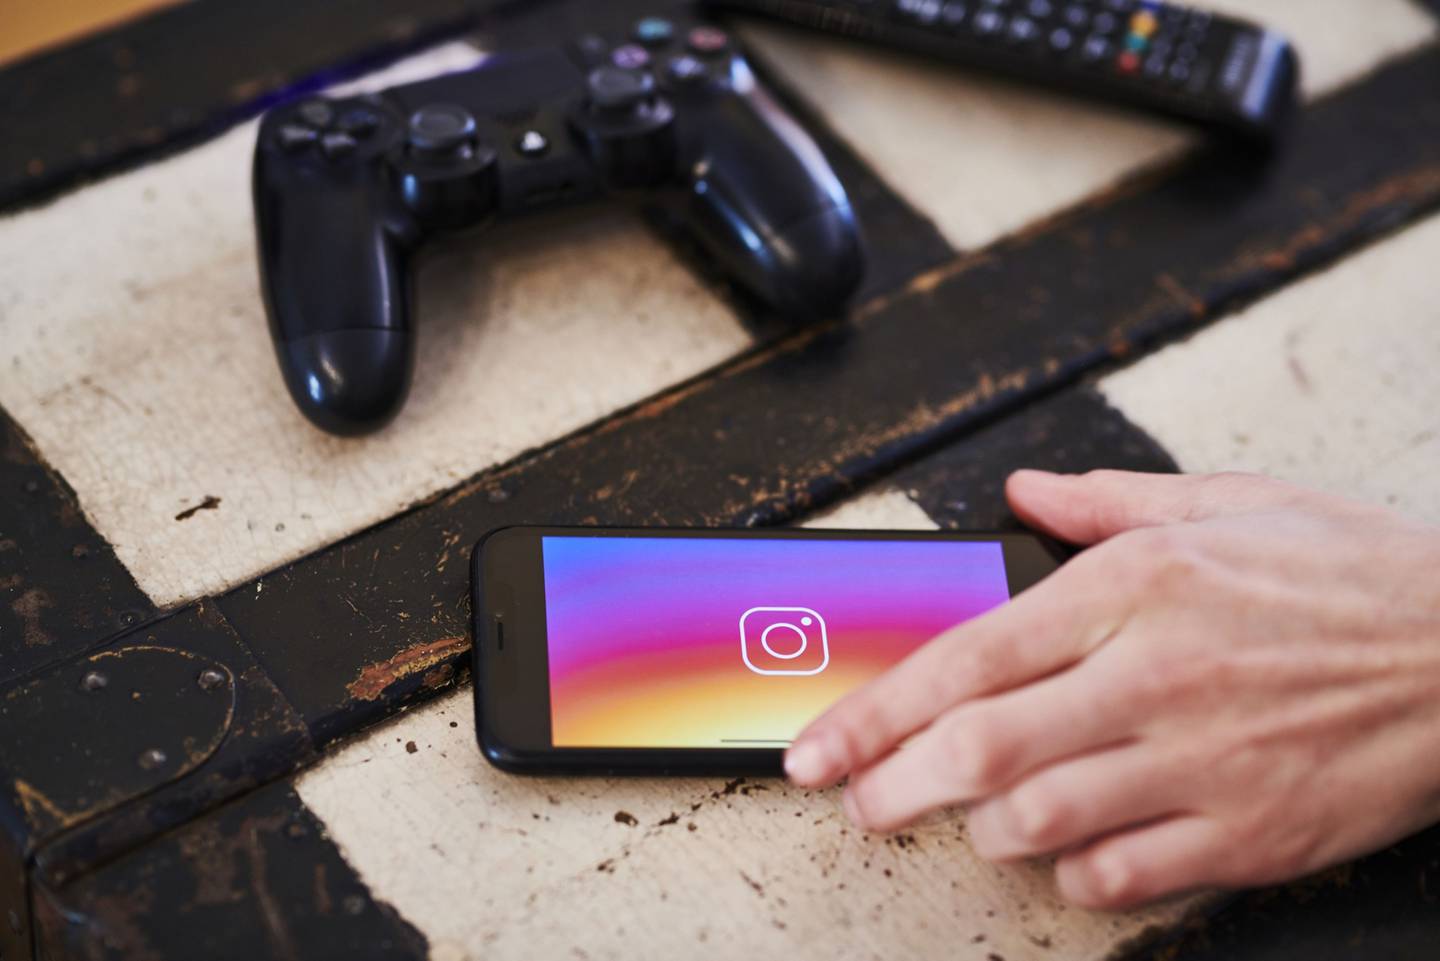 La prueba en Instagram llega cuando Meta y sus plataformas se han enfrentado a una ola de críticas sobre la forma en que los usuarios interactúan con los productos.